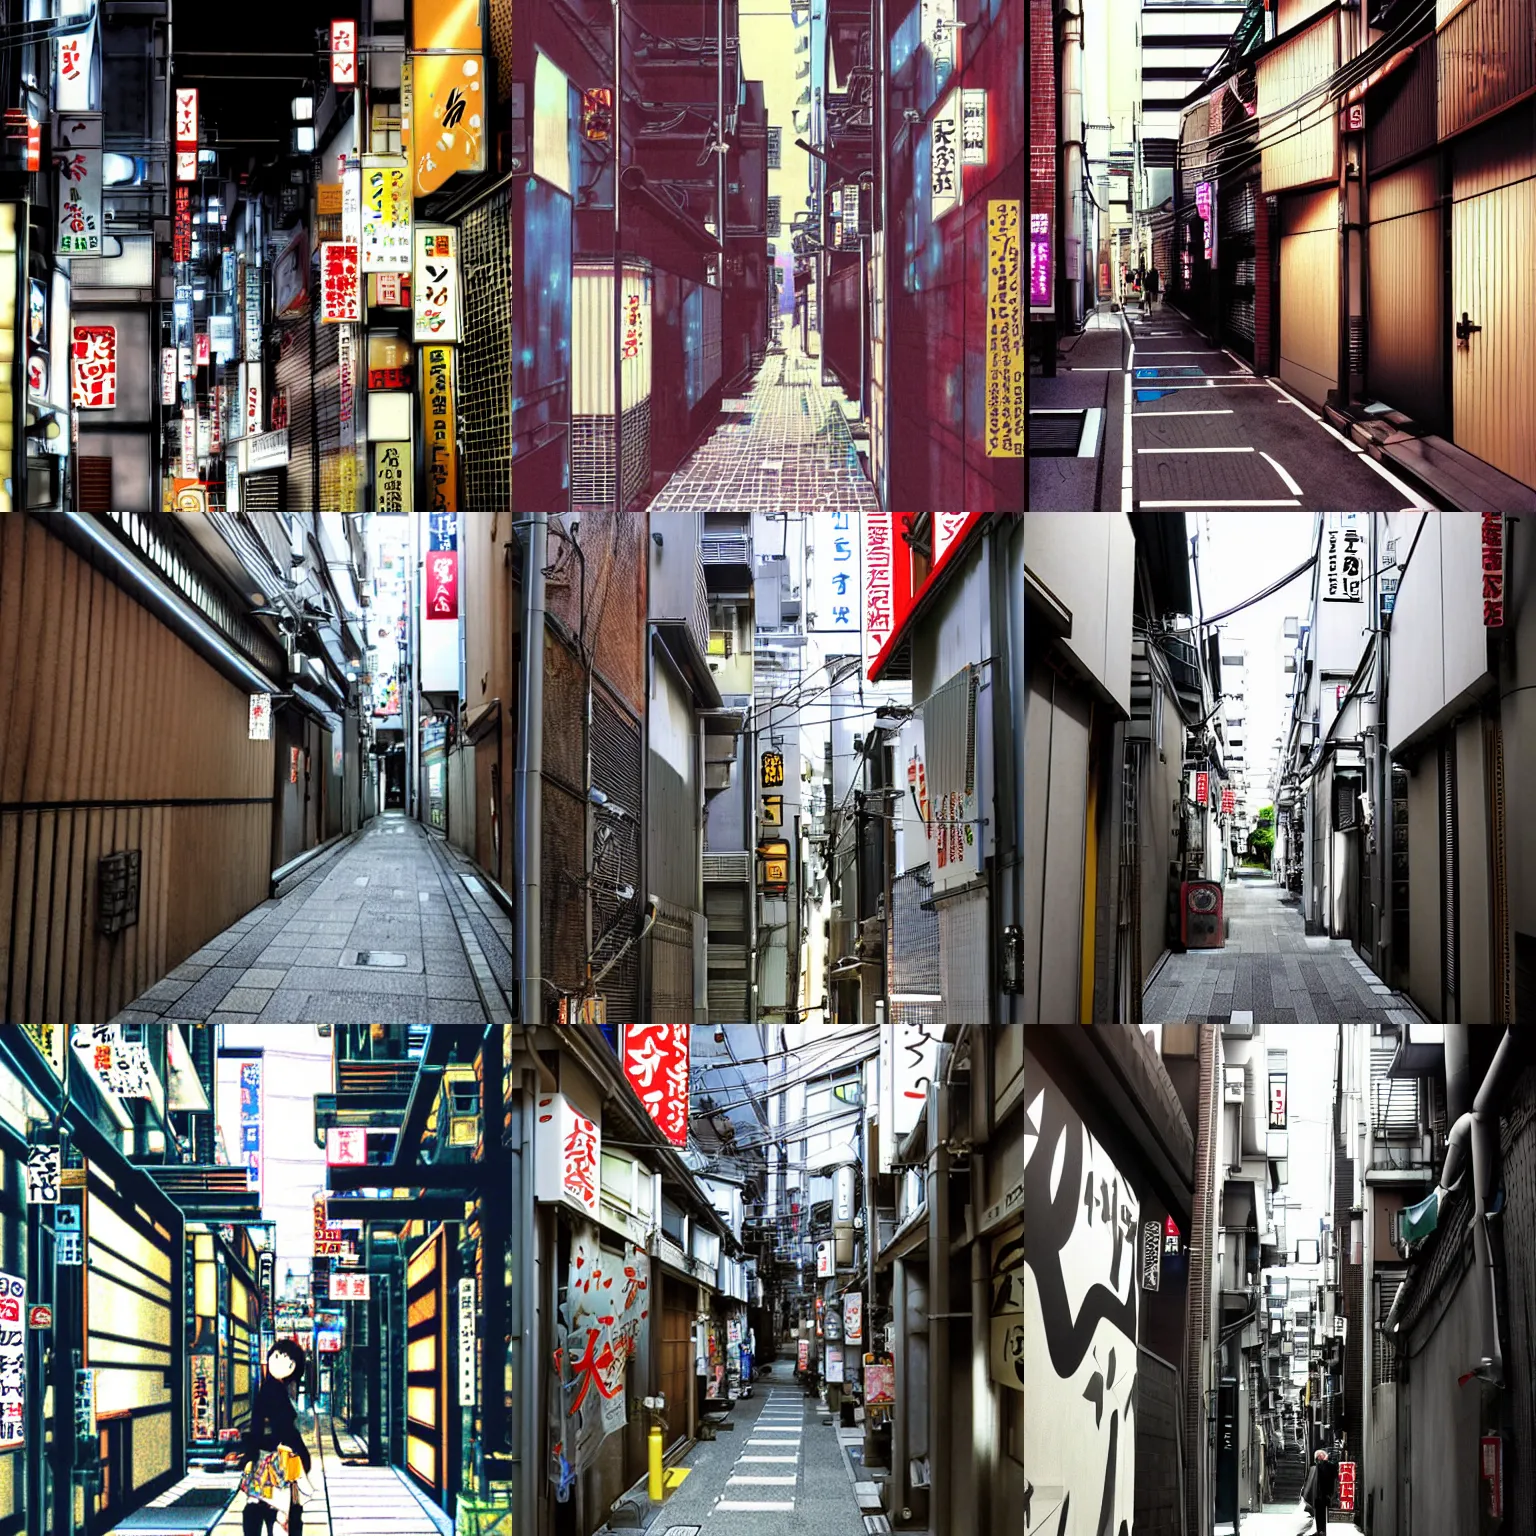 Prompt: tokyo alleyway by shigenori soejima, beautiful